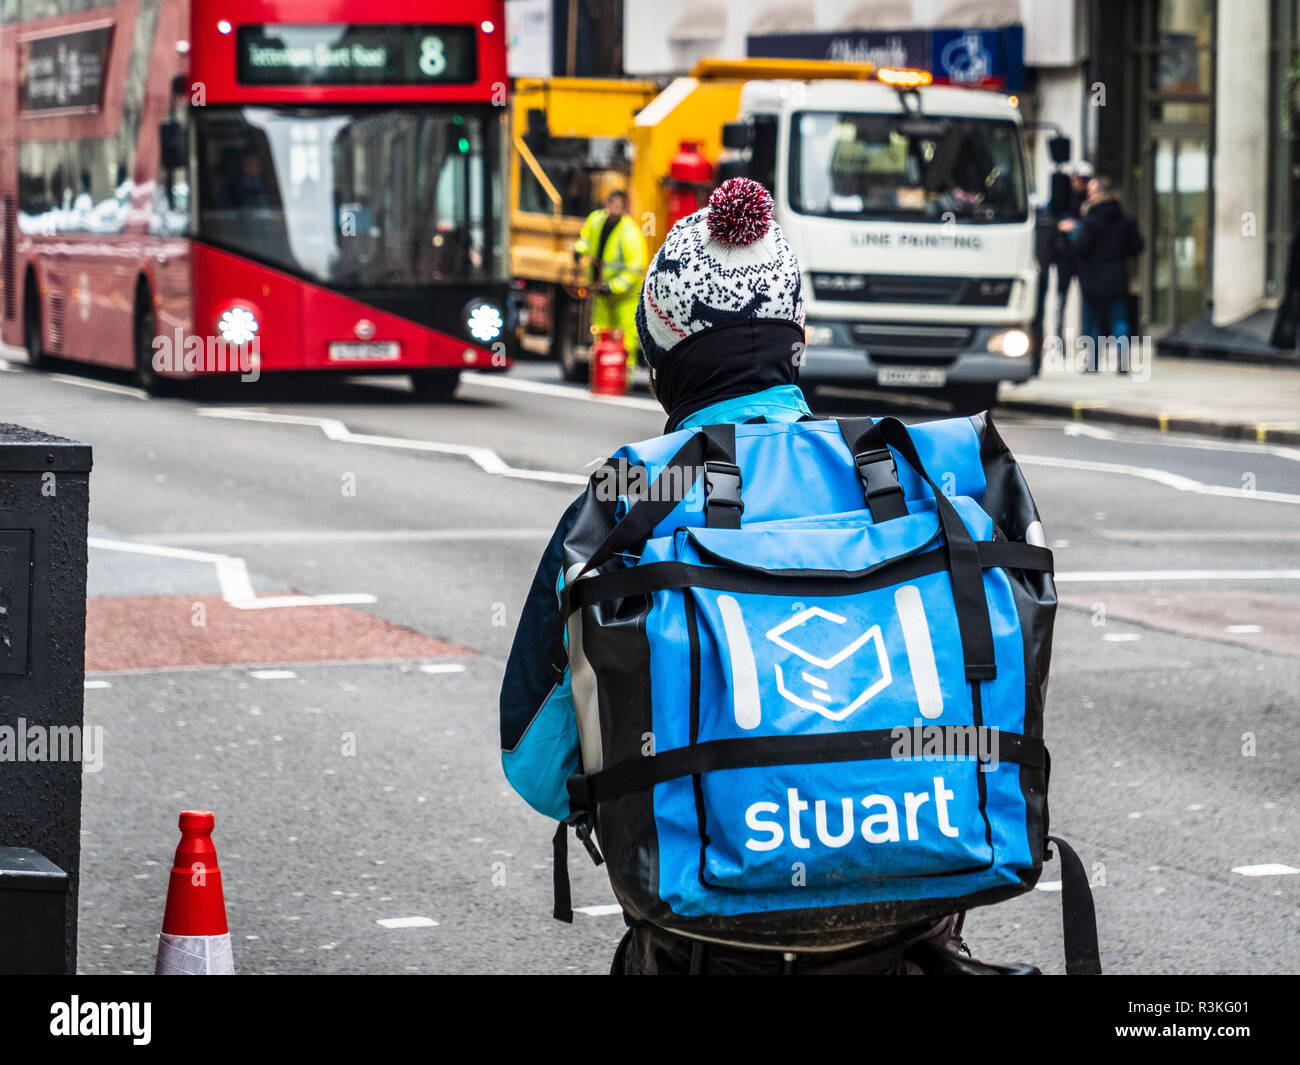 Una empresa de suministro de alimentos de Stuart courier paseos por las calles de Londres, Stuart está compitiendo con Deliveroo y Uber come en este mercado competitivo Foto de stock